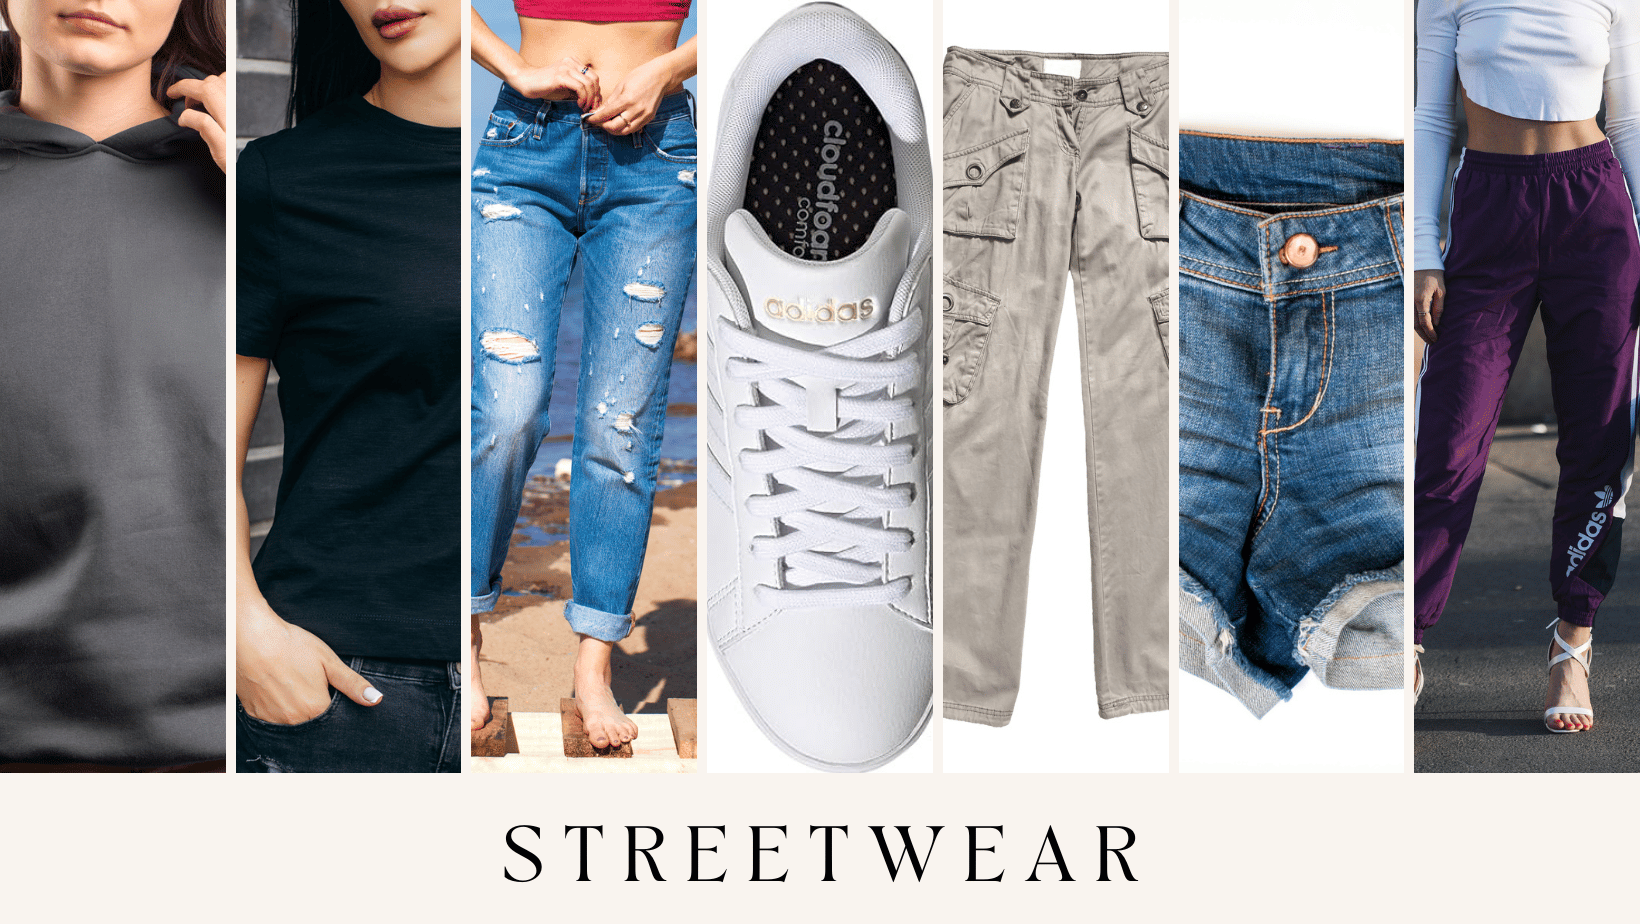 Best of Street Style & Streetwear Fashion